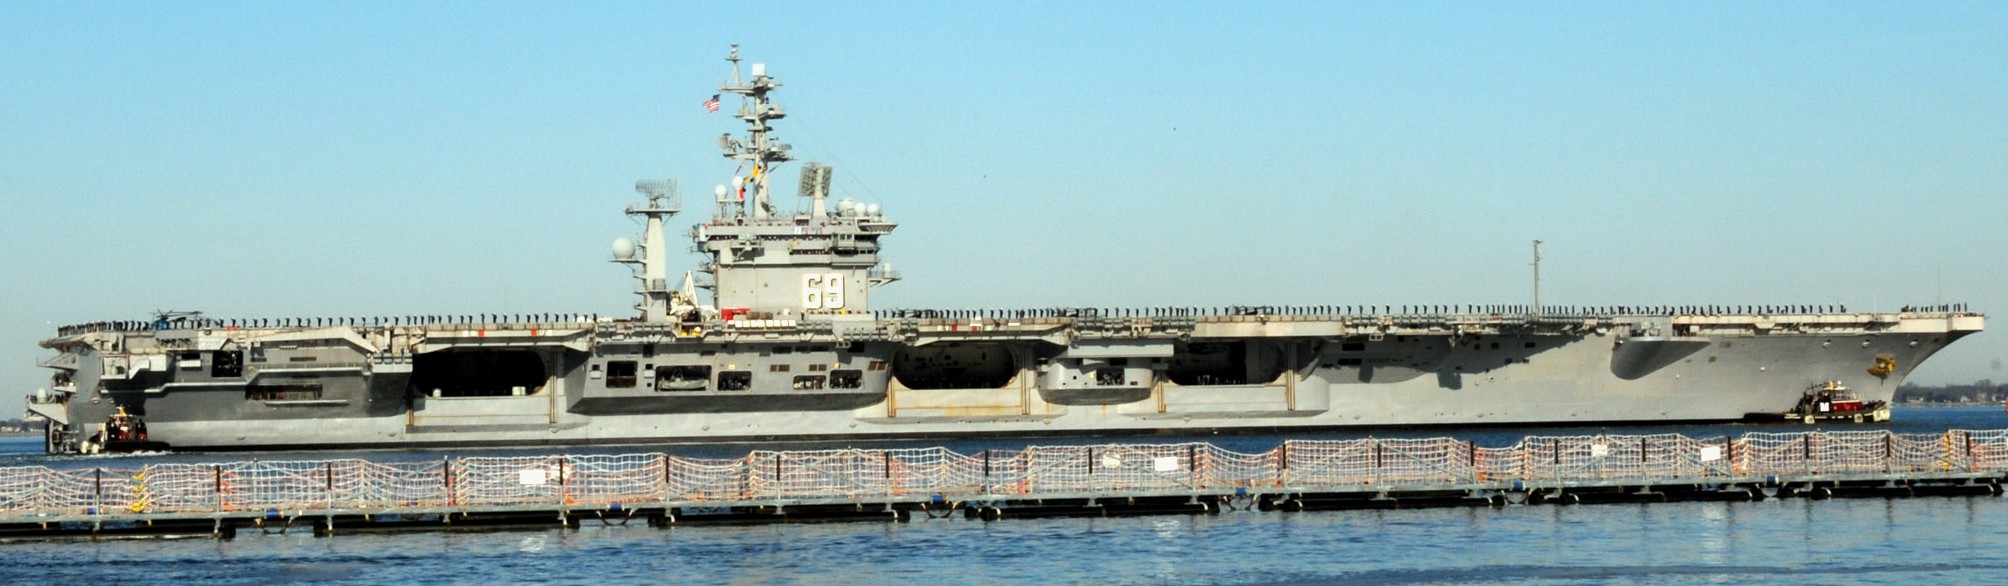 cvn-69 uss dwight d. eisenhower aircraft carrier us navy 394